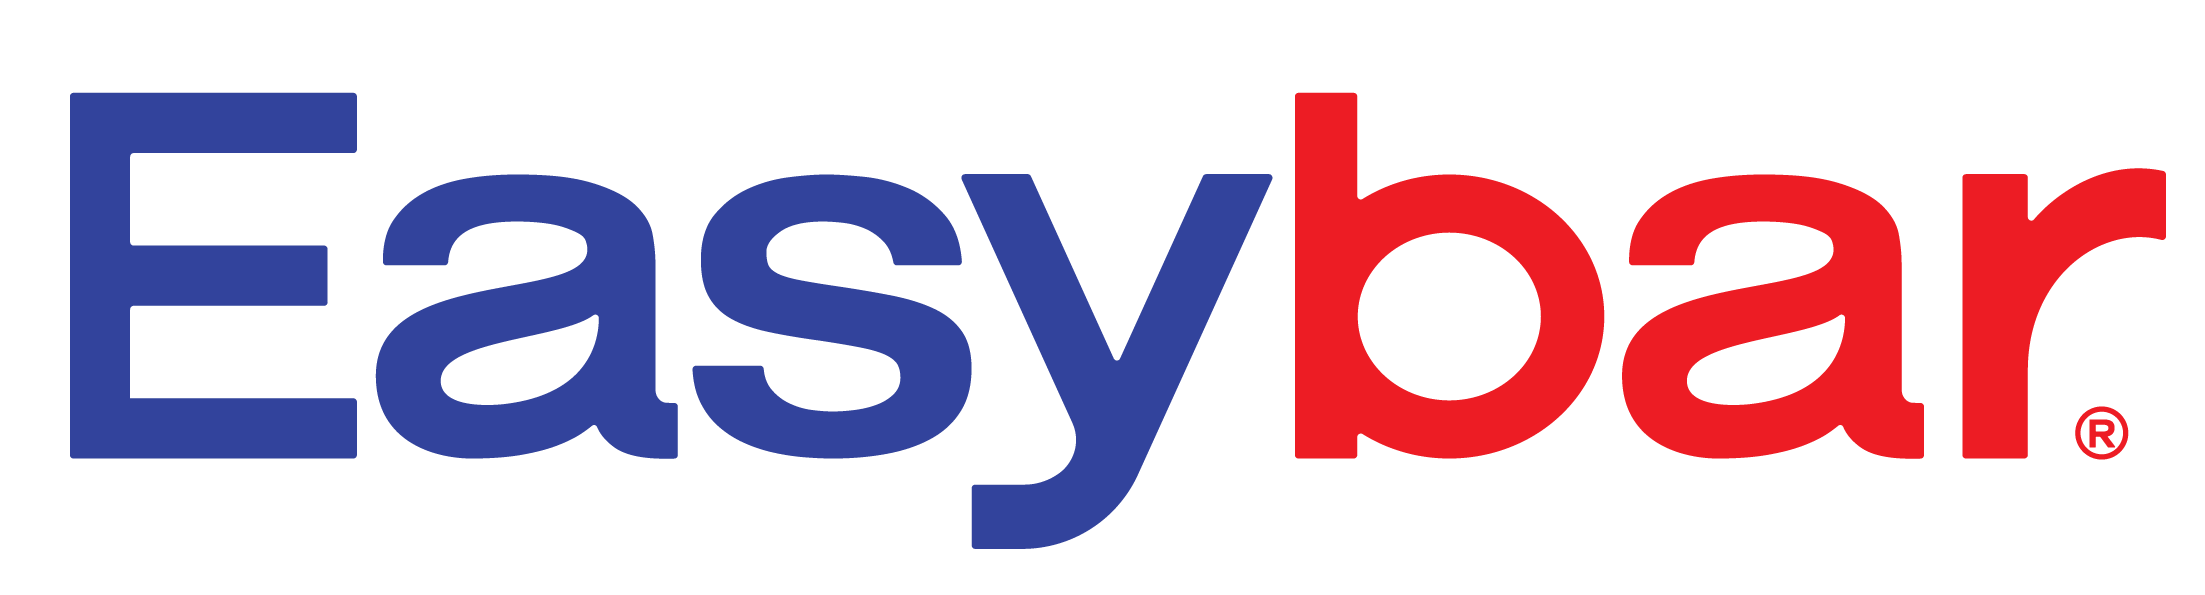 Easybar logo website